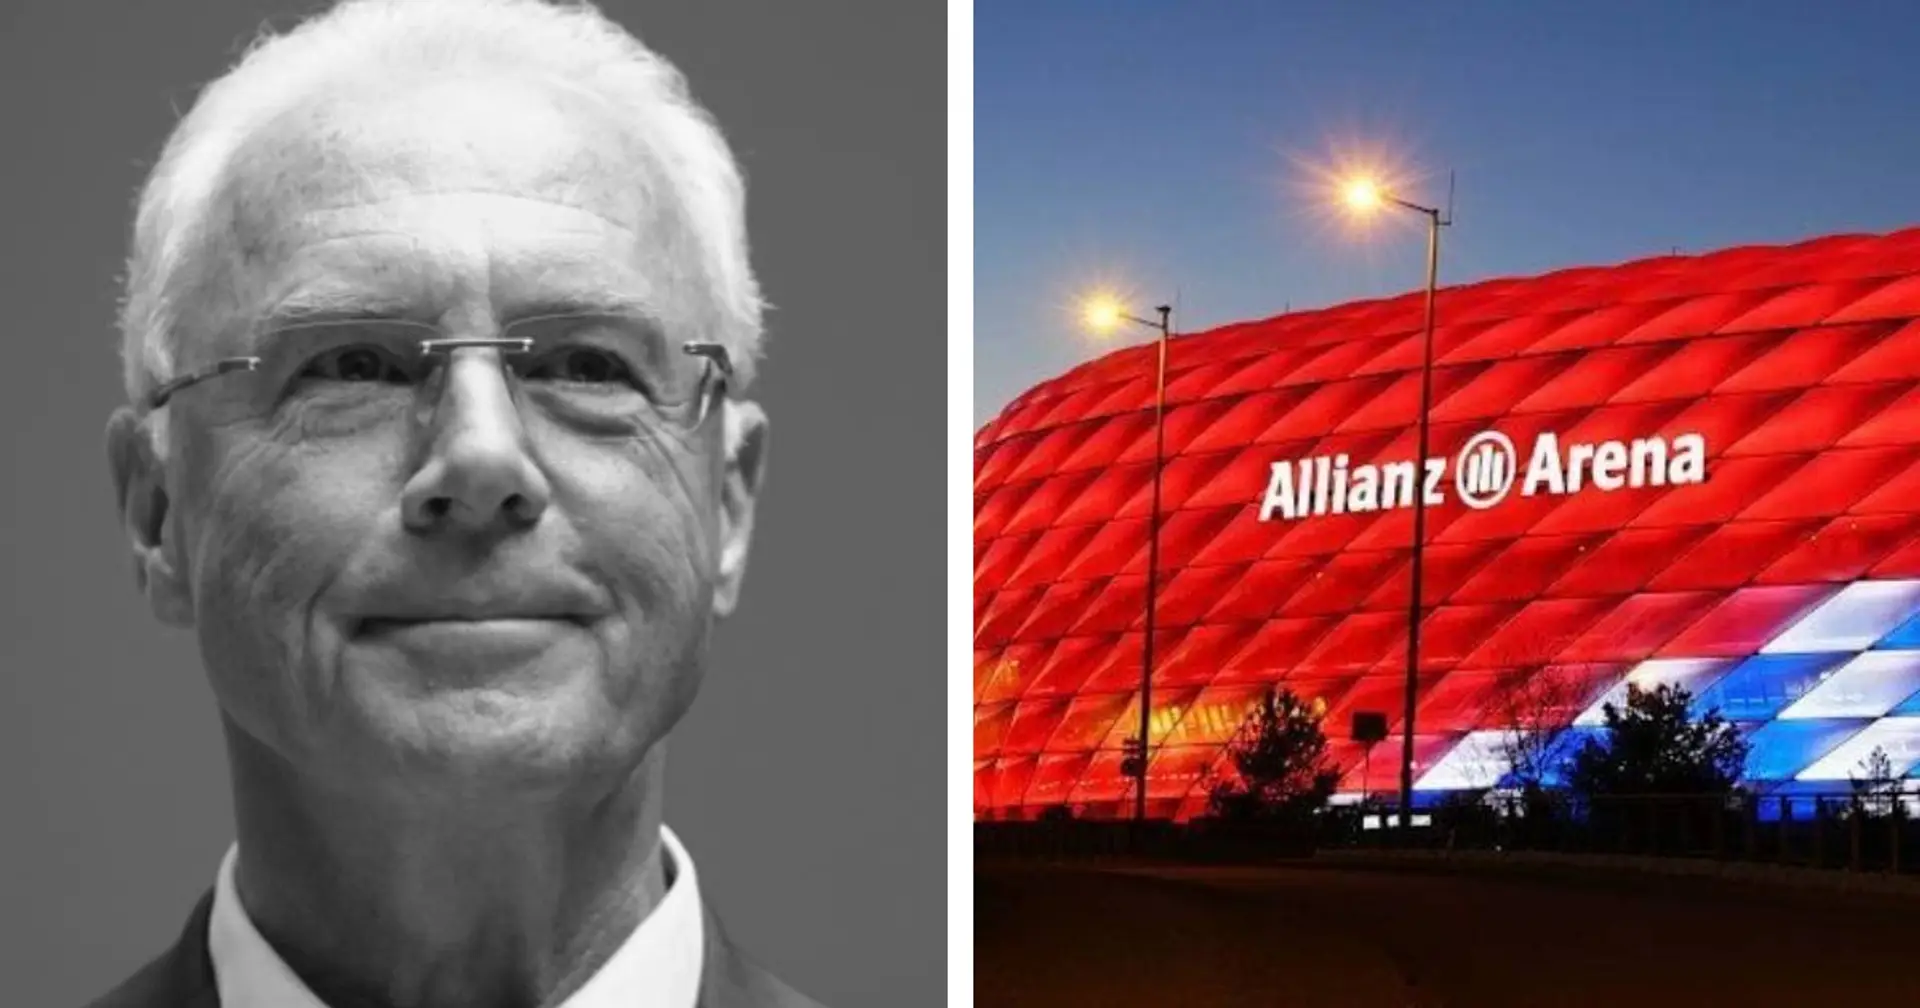 Hitzfeld schlägt vor, die Allianz Arena in Franz-Beckenbauer-Arena umzubenennen